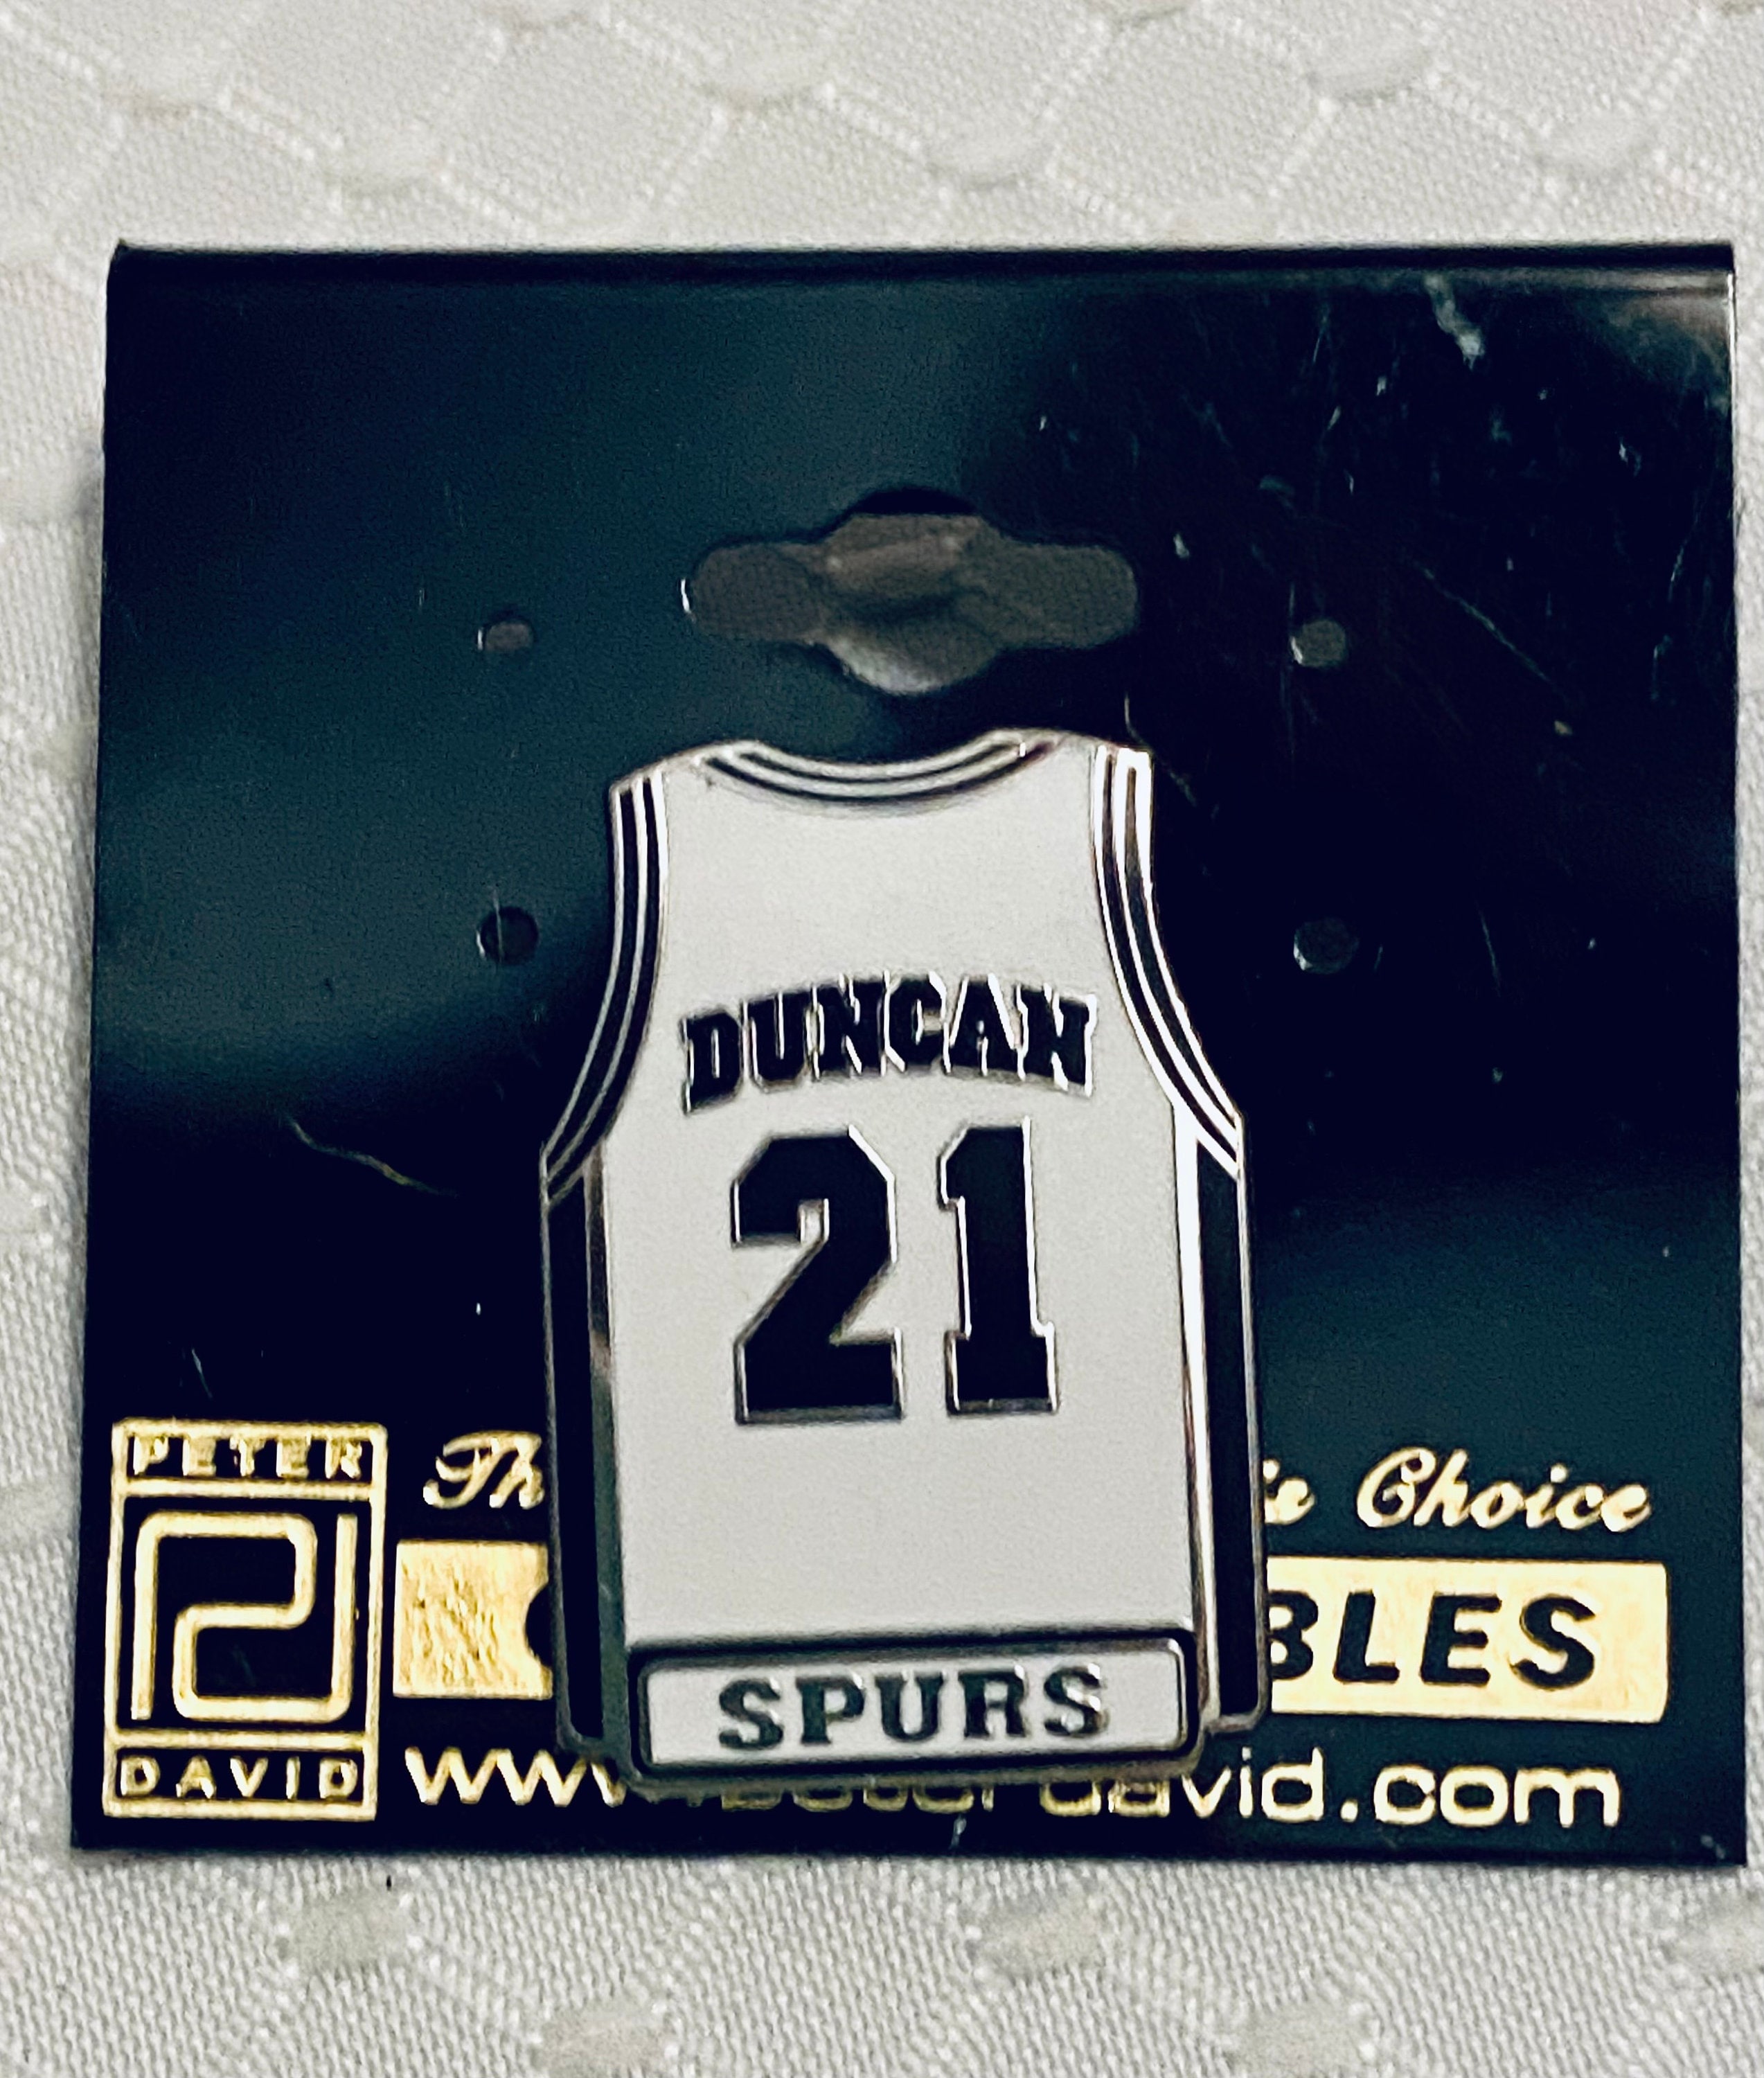 VINTAGE Champion San Antonio Spurs Tim Duncan 21 Jersey Men Adult Size XS  Black